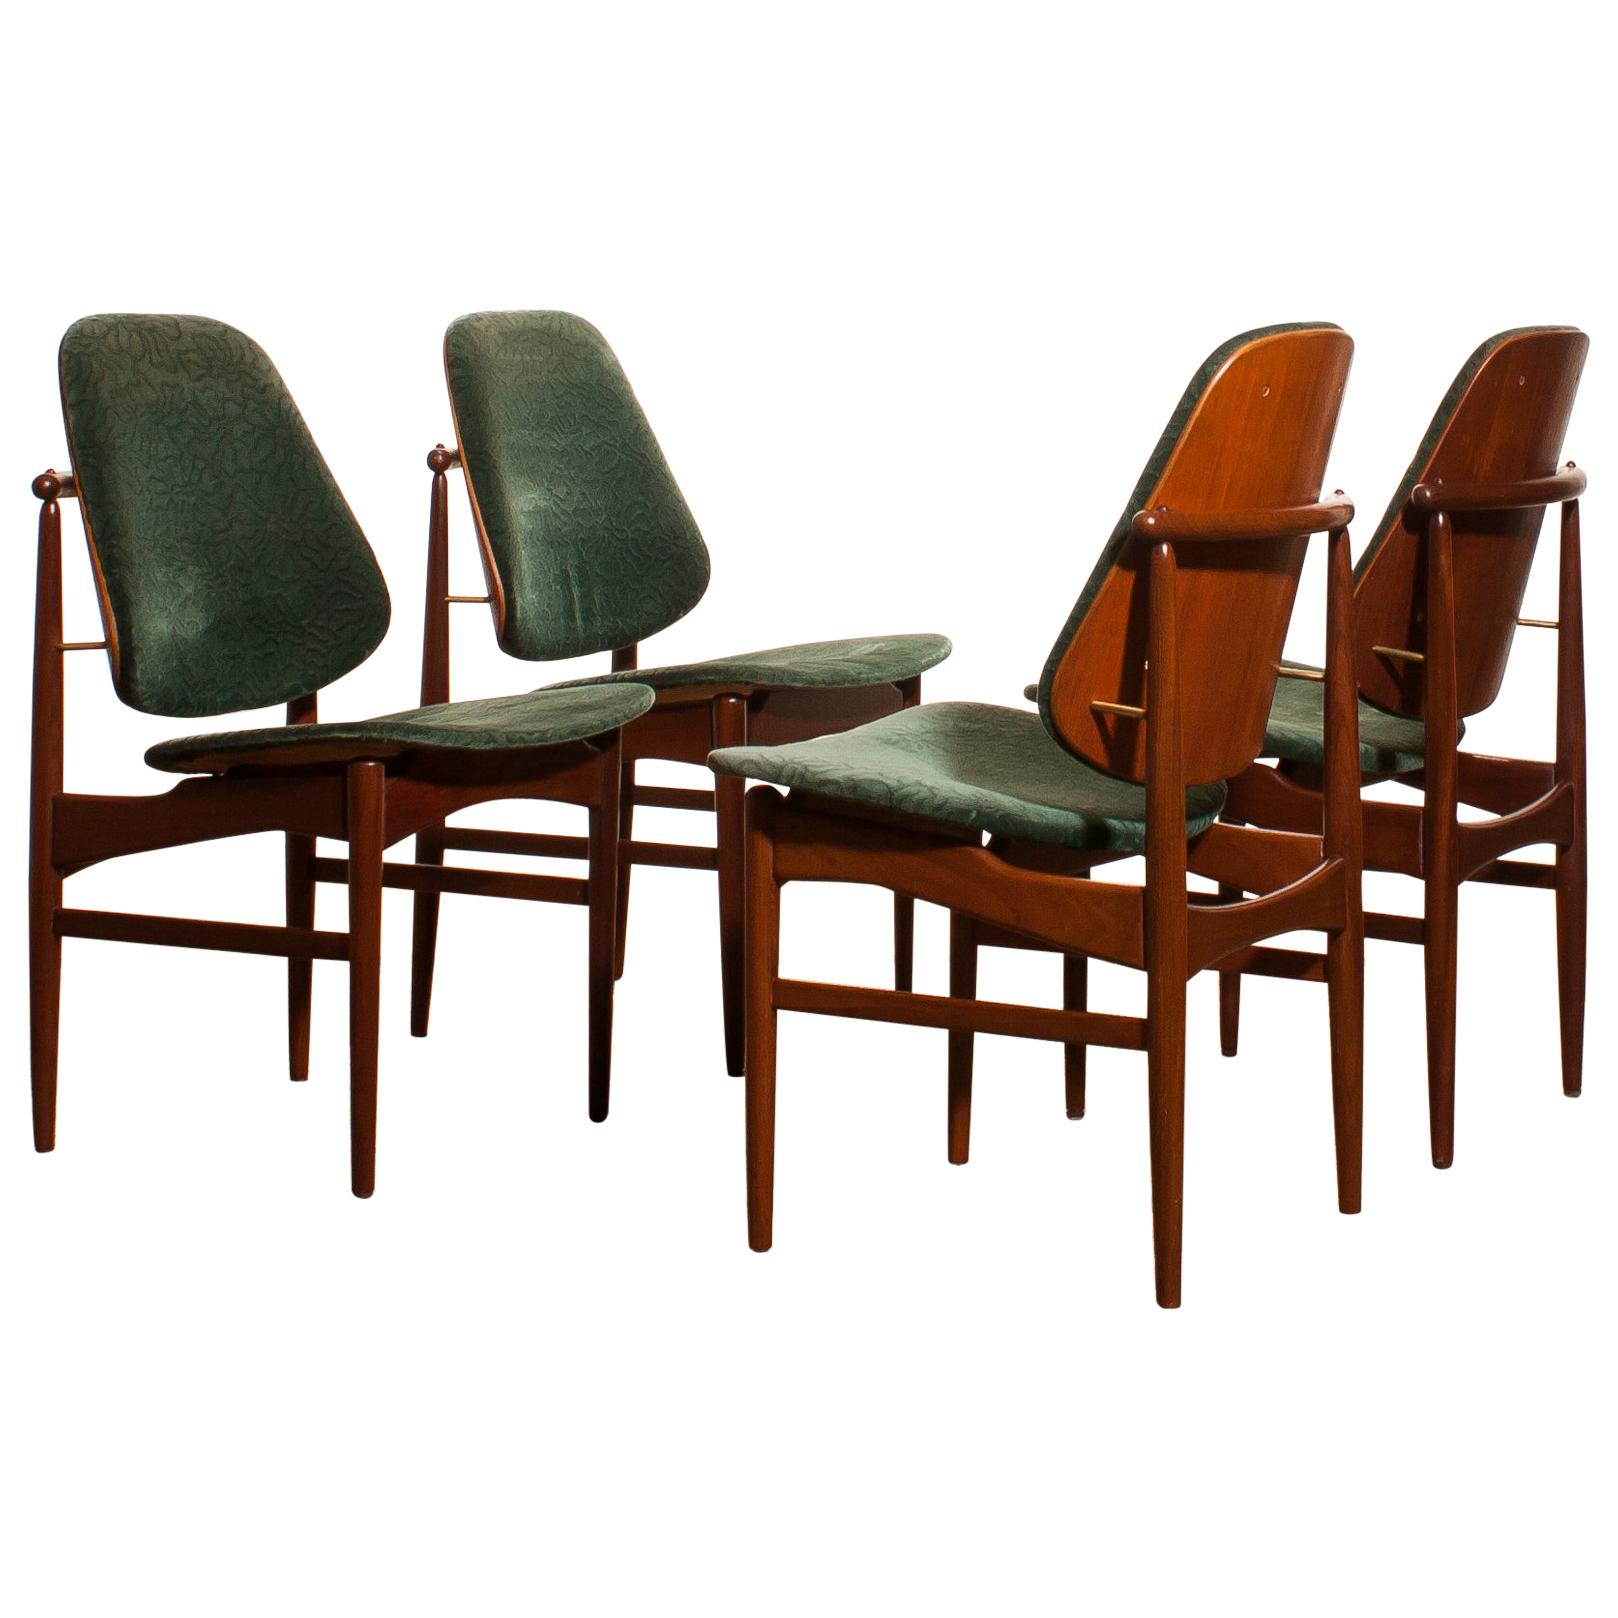 1950s, Set of Four Teak Dining Chairs by Arne Vodder for France & Daverkosen